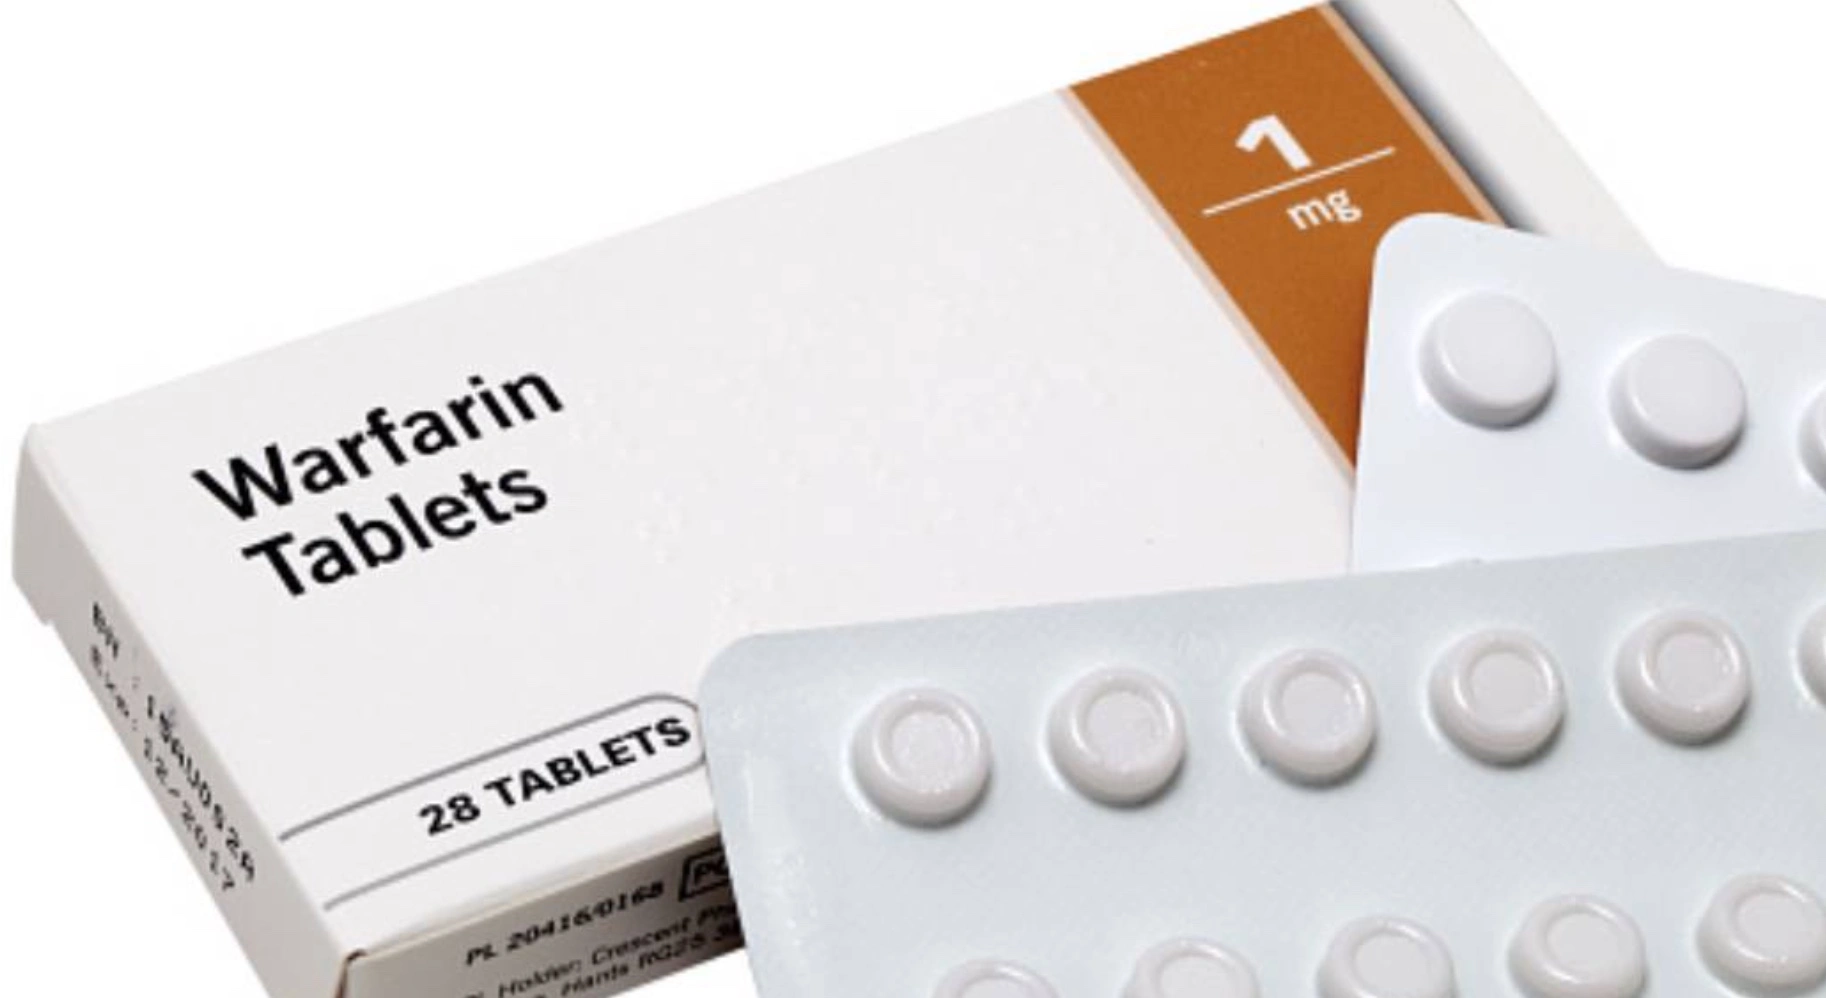 Warfarin tablets reduce cancer risk.